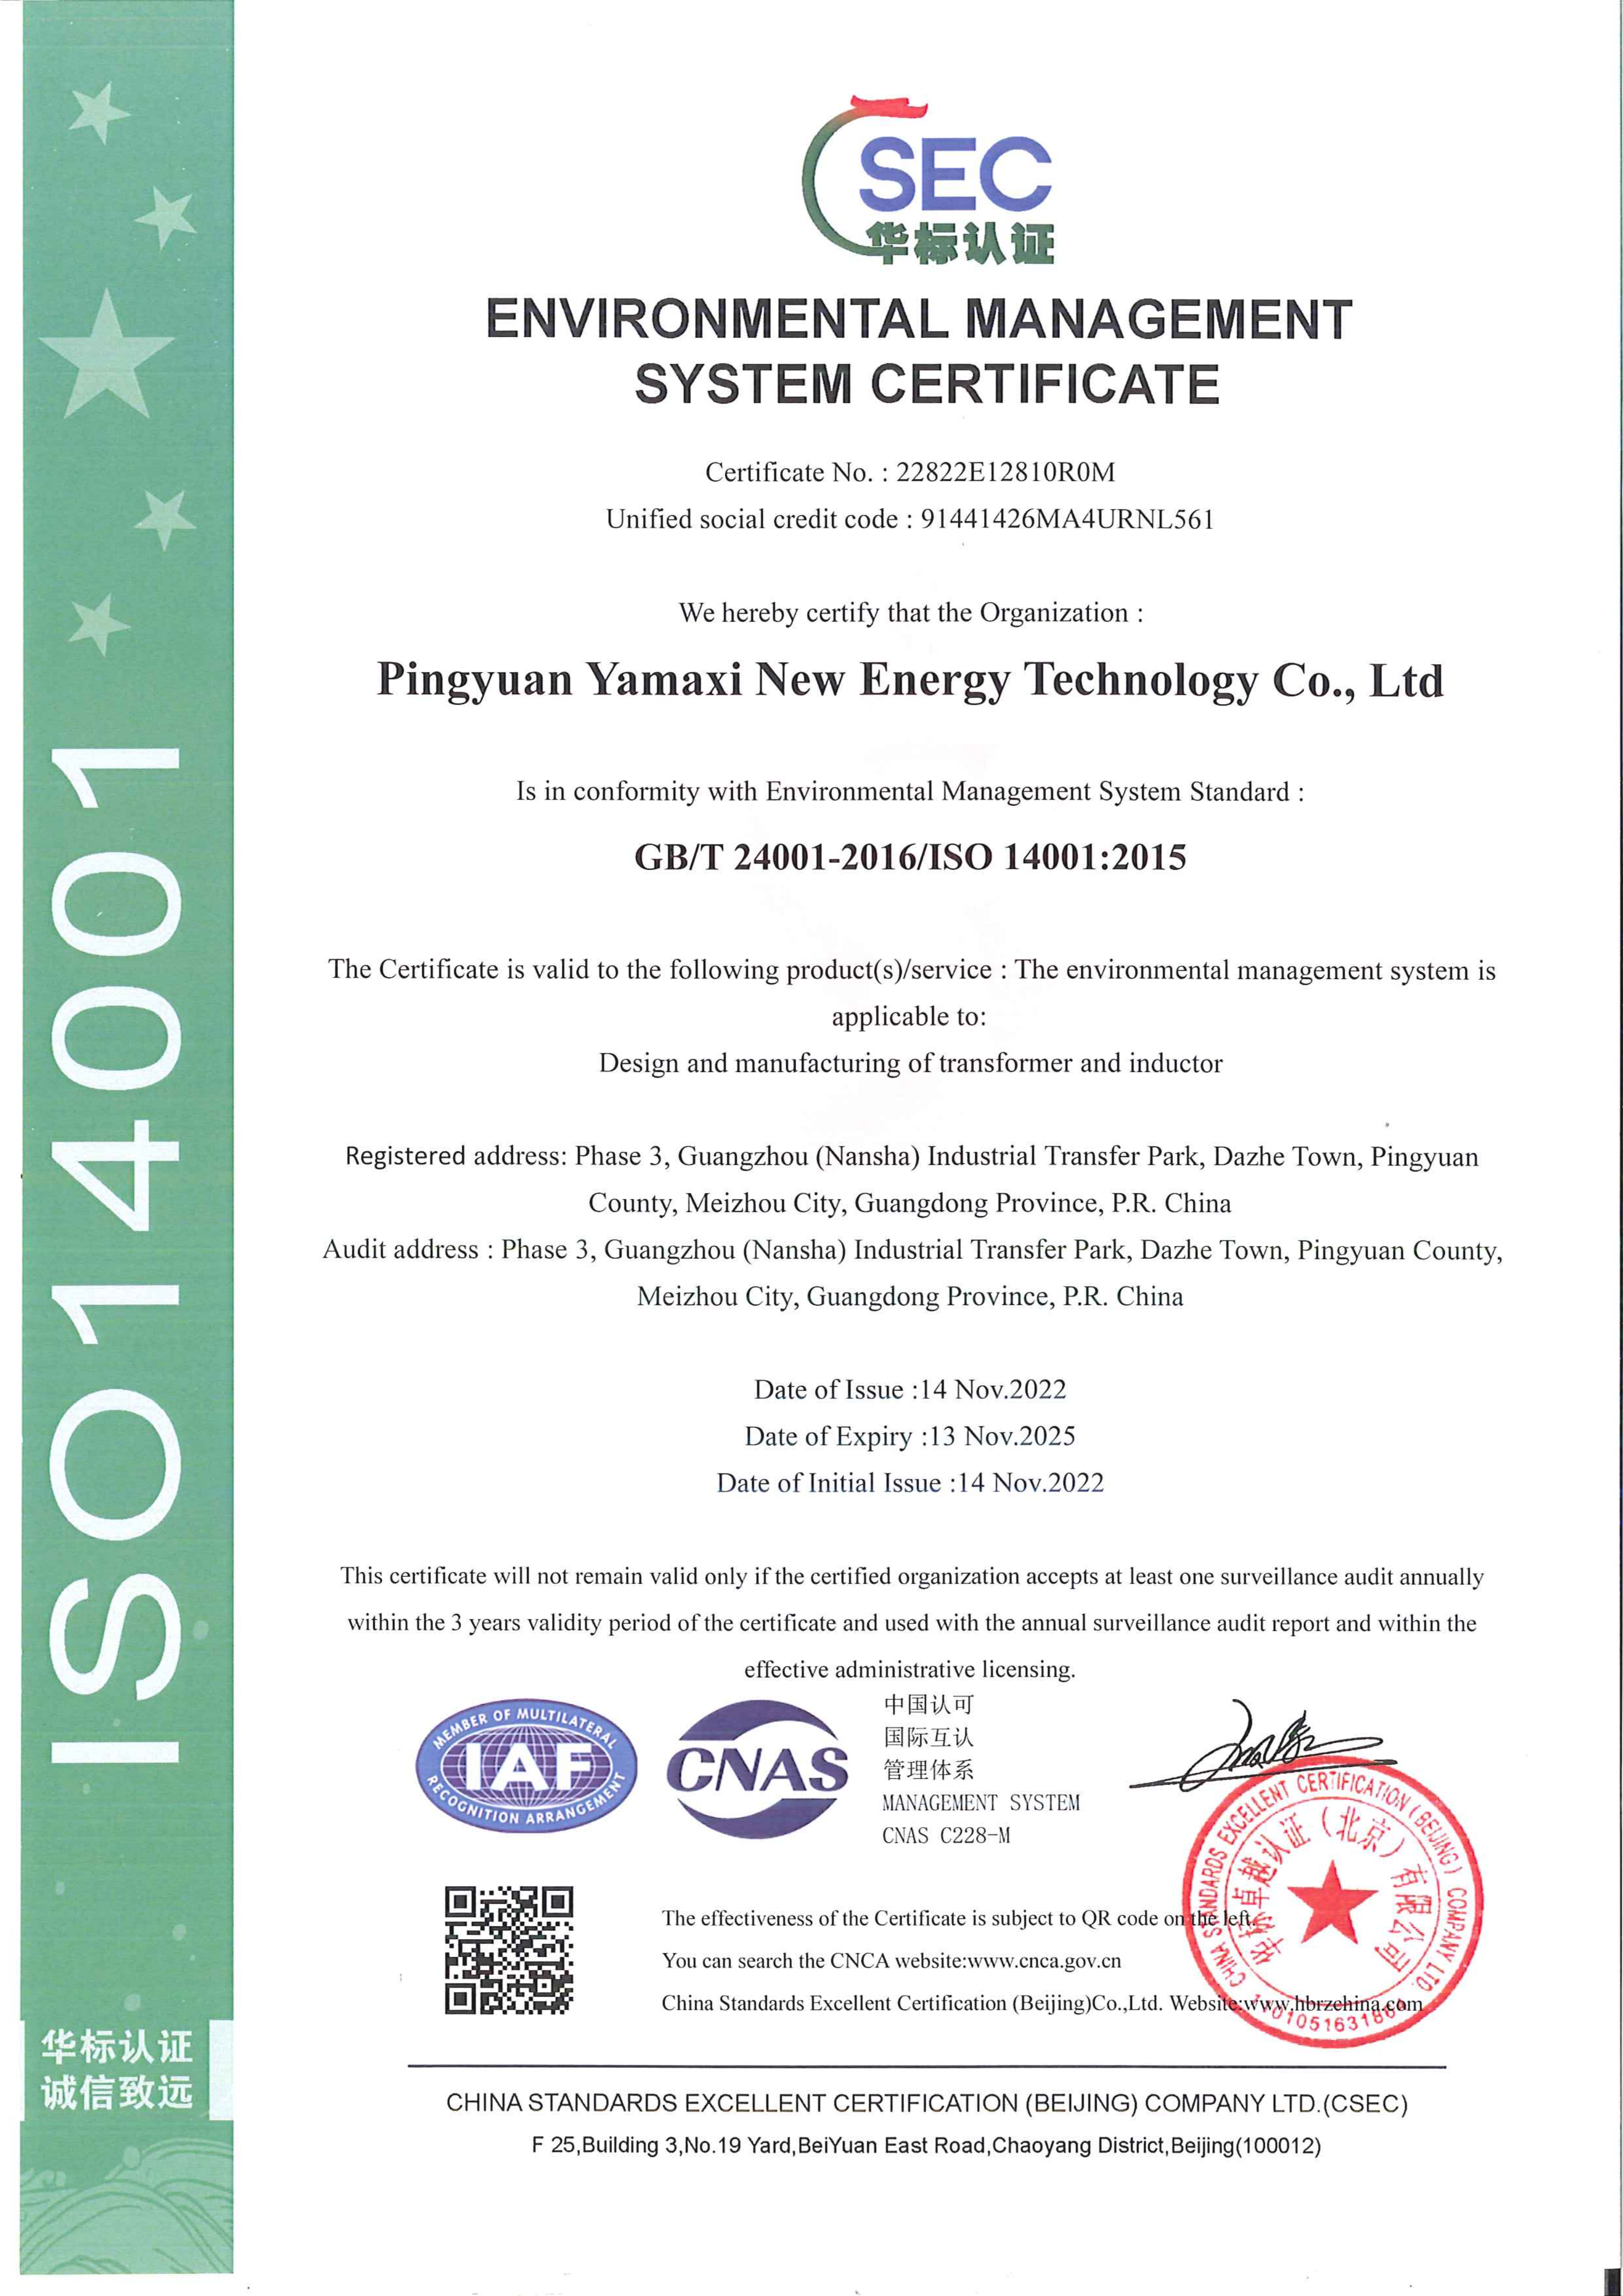 5.1 新能源-ISO14001证书--中文 2022.12.05_00